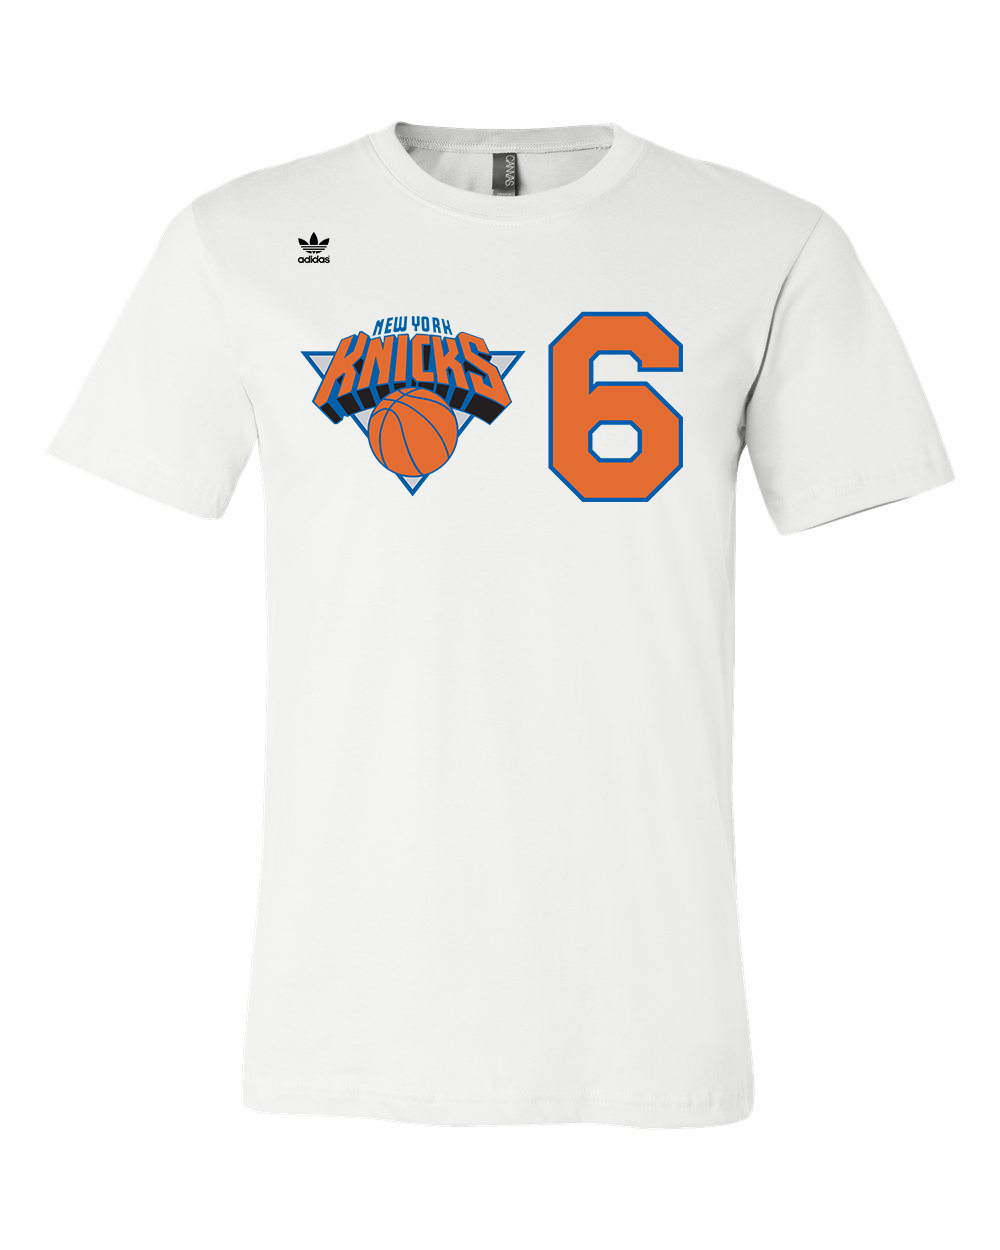 NBA New York Knicks Custom Name Number Gray Orange Skull T-Shirt